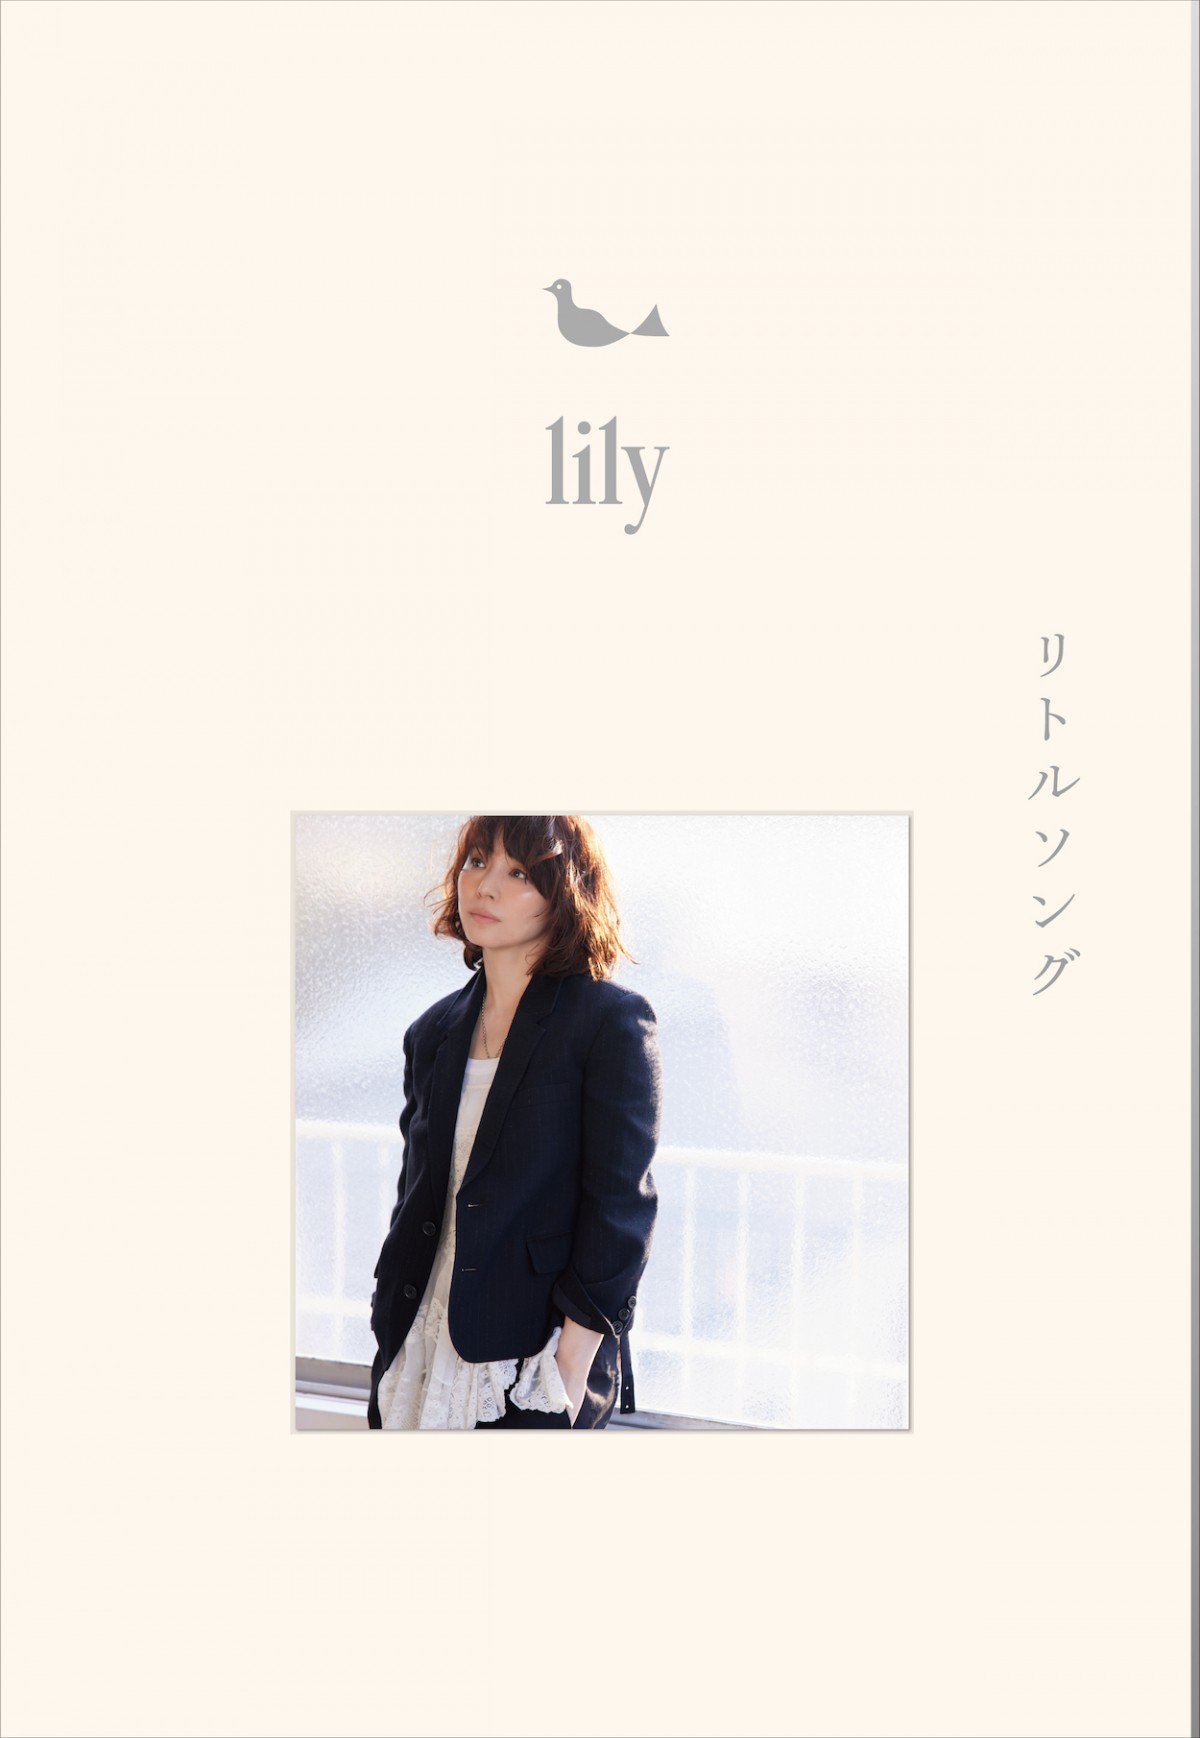 石田ゆり子の音楽活動プロジェクト“lily”　初のミニアルバム発売決定